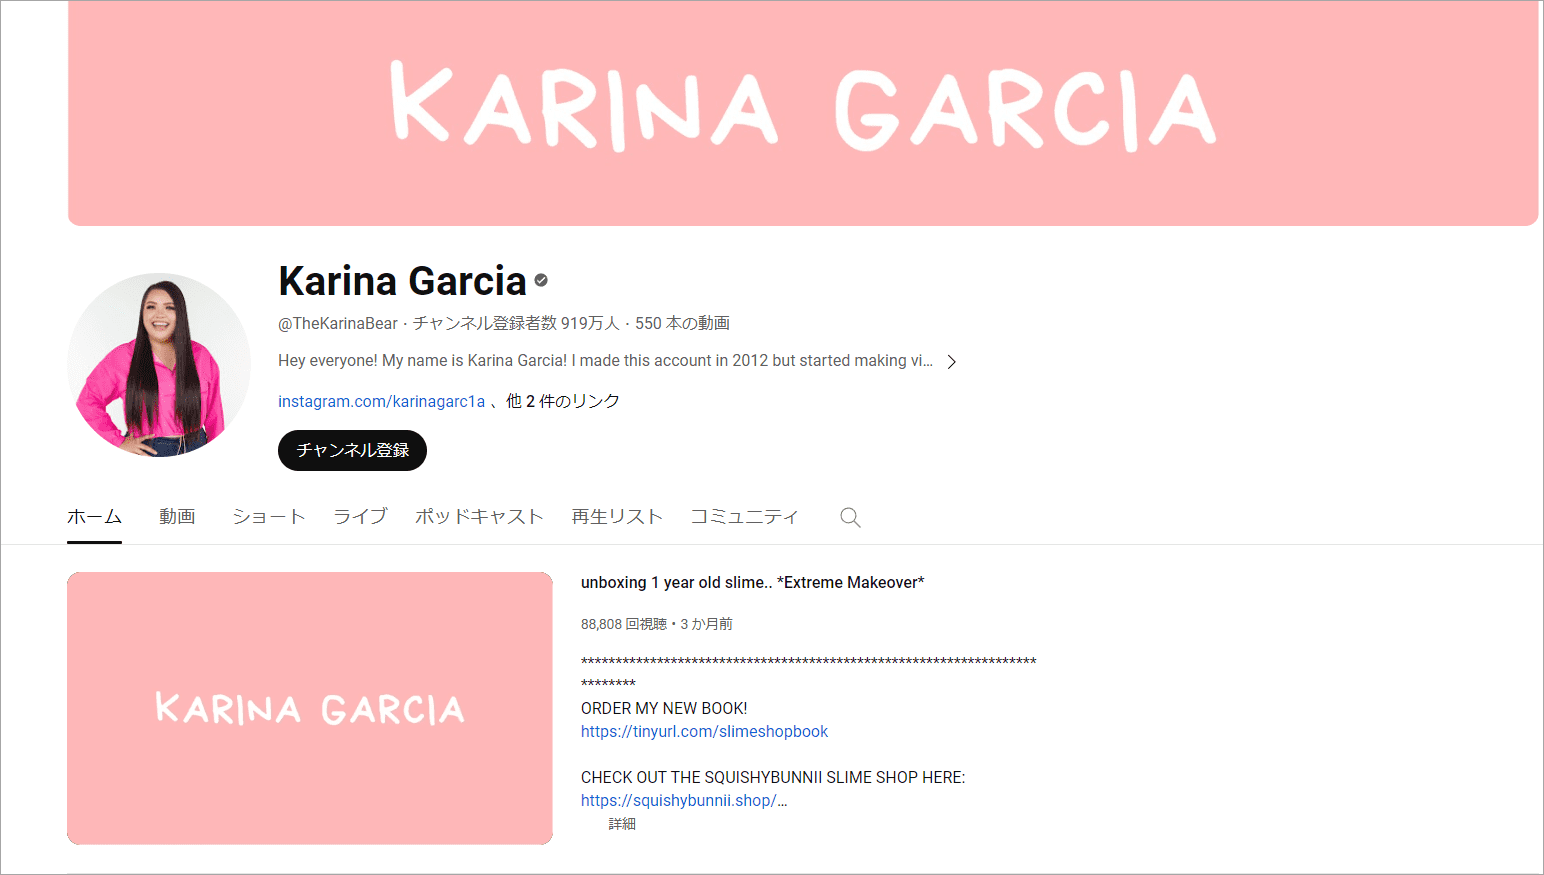 Karina Garcia